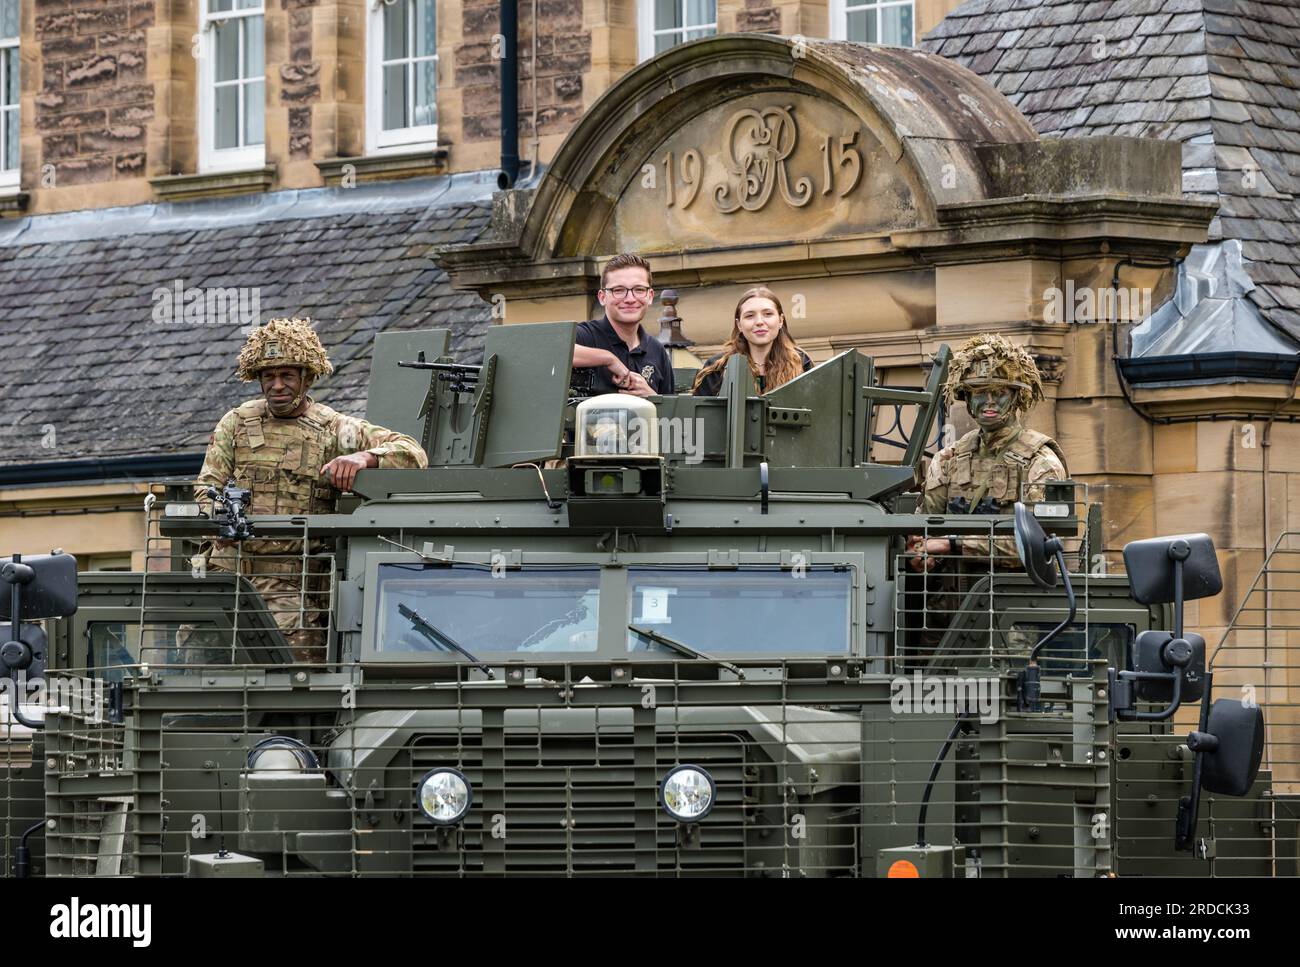 Frnge interpreti di Ctrl Room con British Soldiers & Mastiff Military Vehicle, Redford Army Barracks, Edimburgo, Scozia, Regno Unito Foto Stock